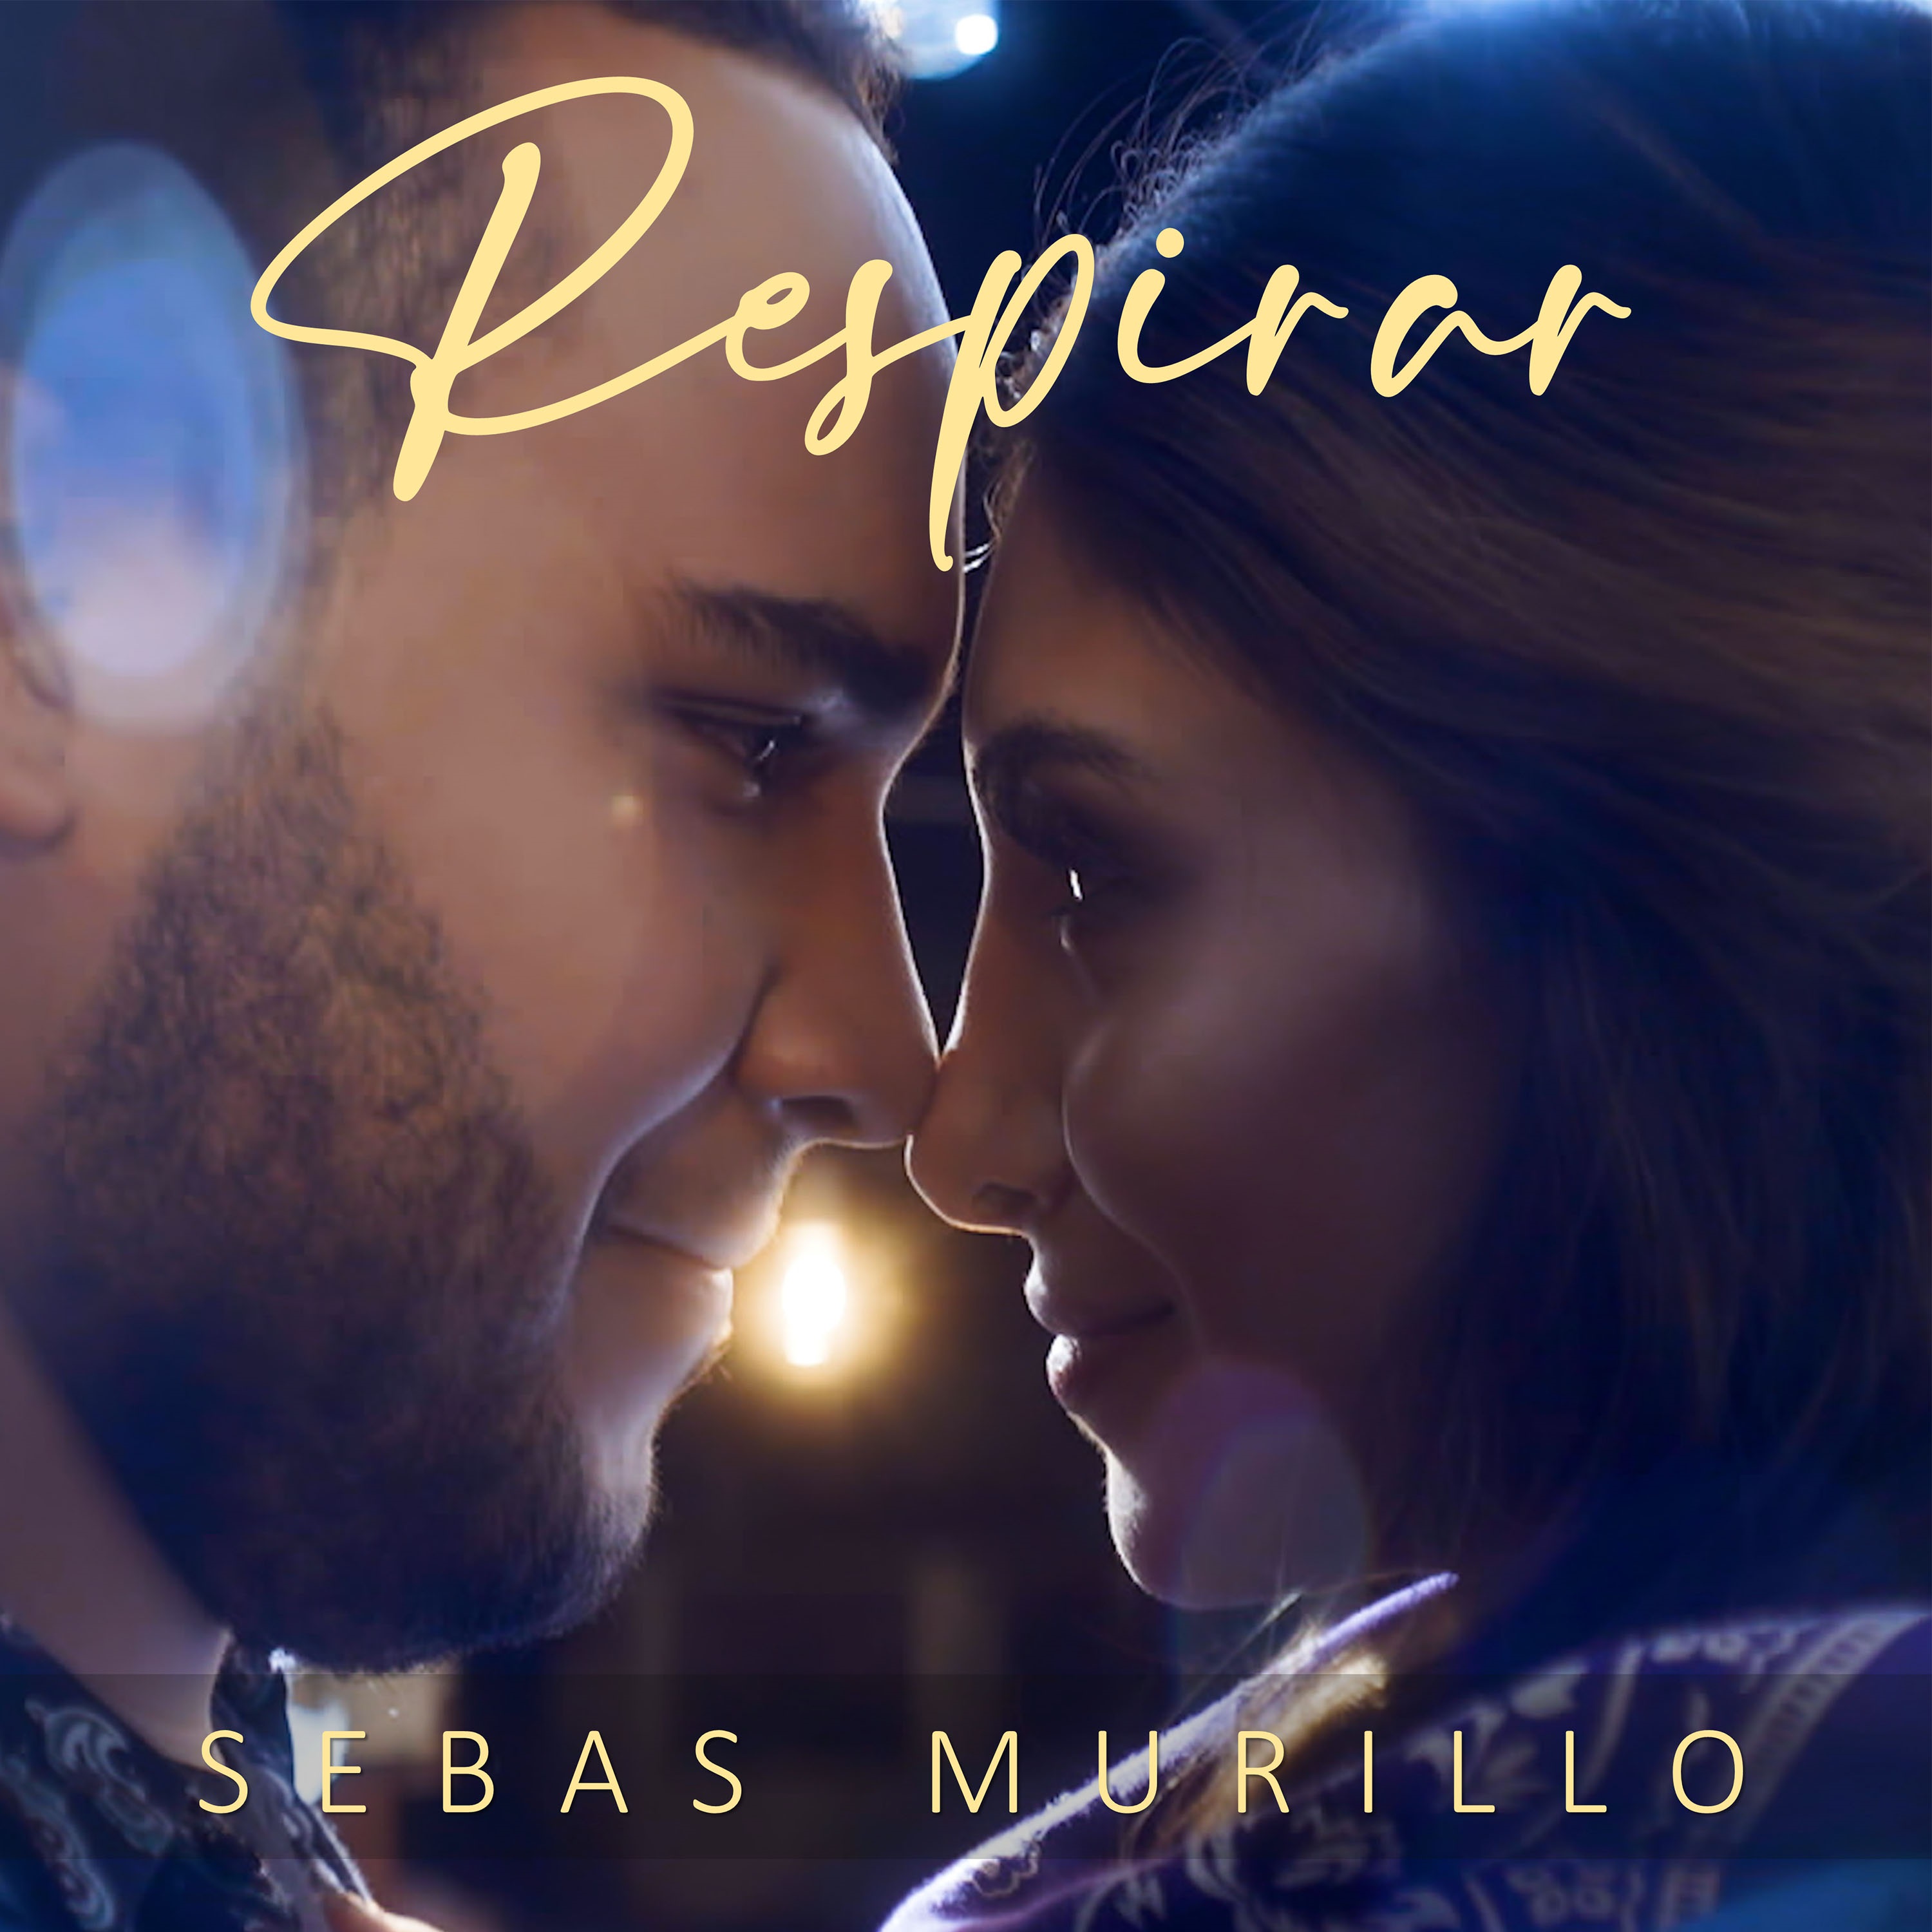  Sebas Murillo lanza 'Respirar', una canción de amor, esperanza y lealtad